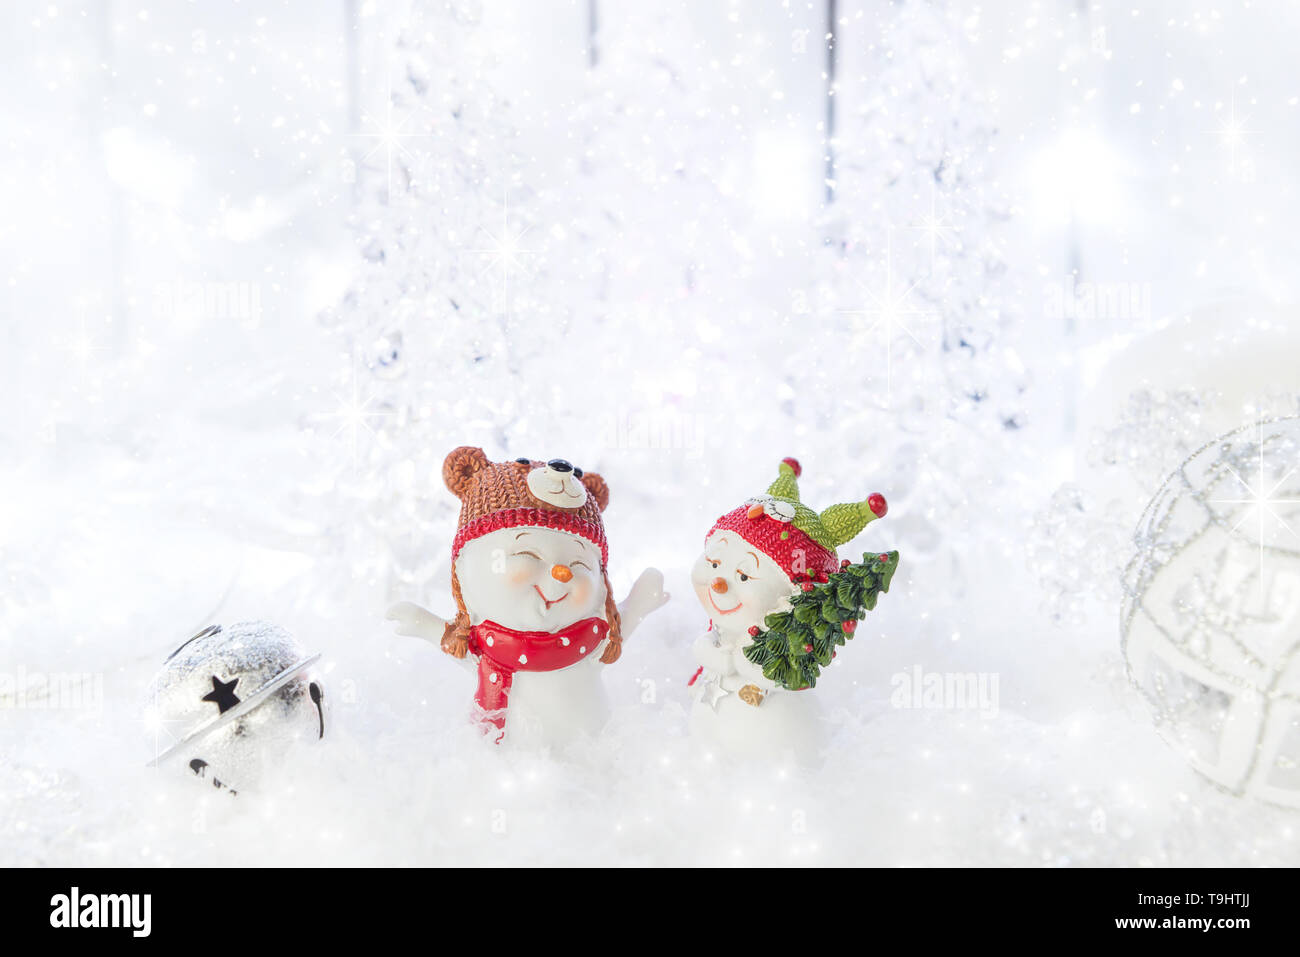 Couple de funny cute snowmens sont bénéficiant de Noël entouré de décorations de fête Banque D'Images